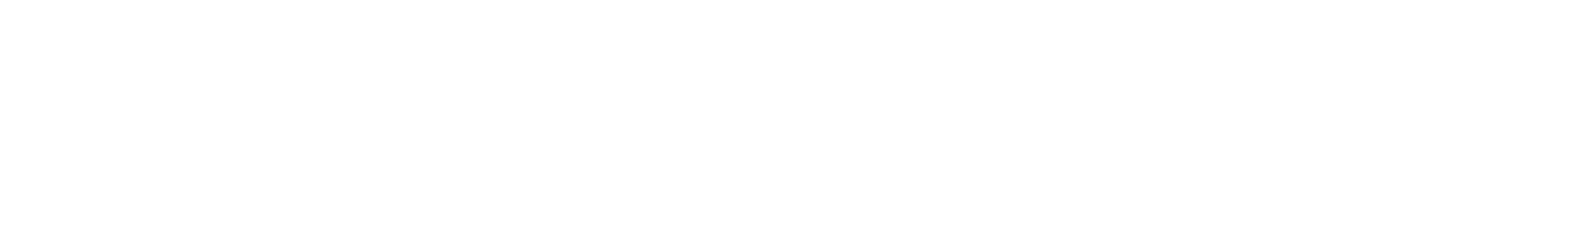 Aurubis logo grand pour les fonds sombres (PNG transparent)